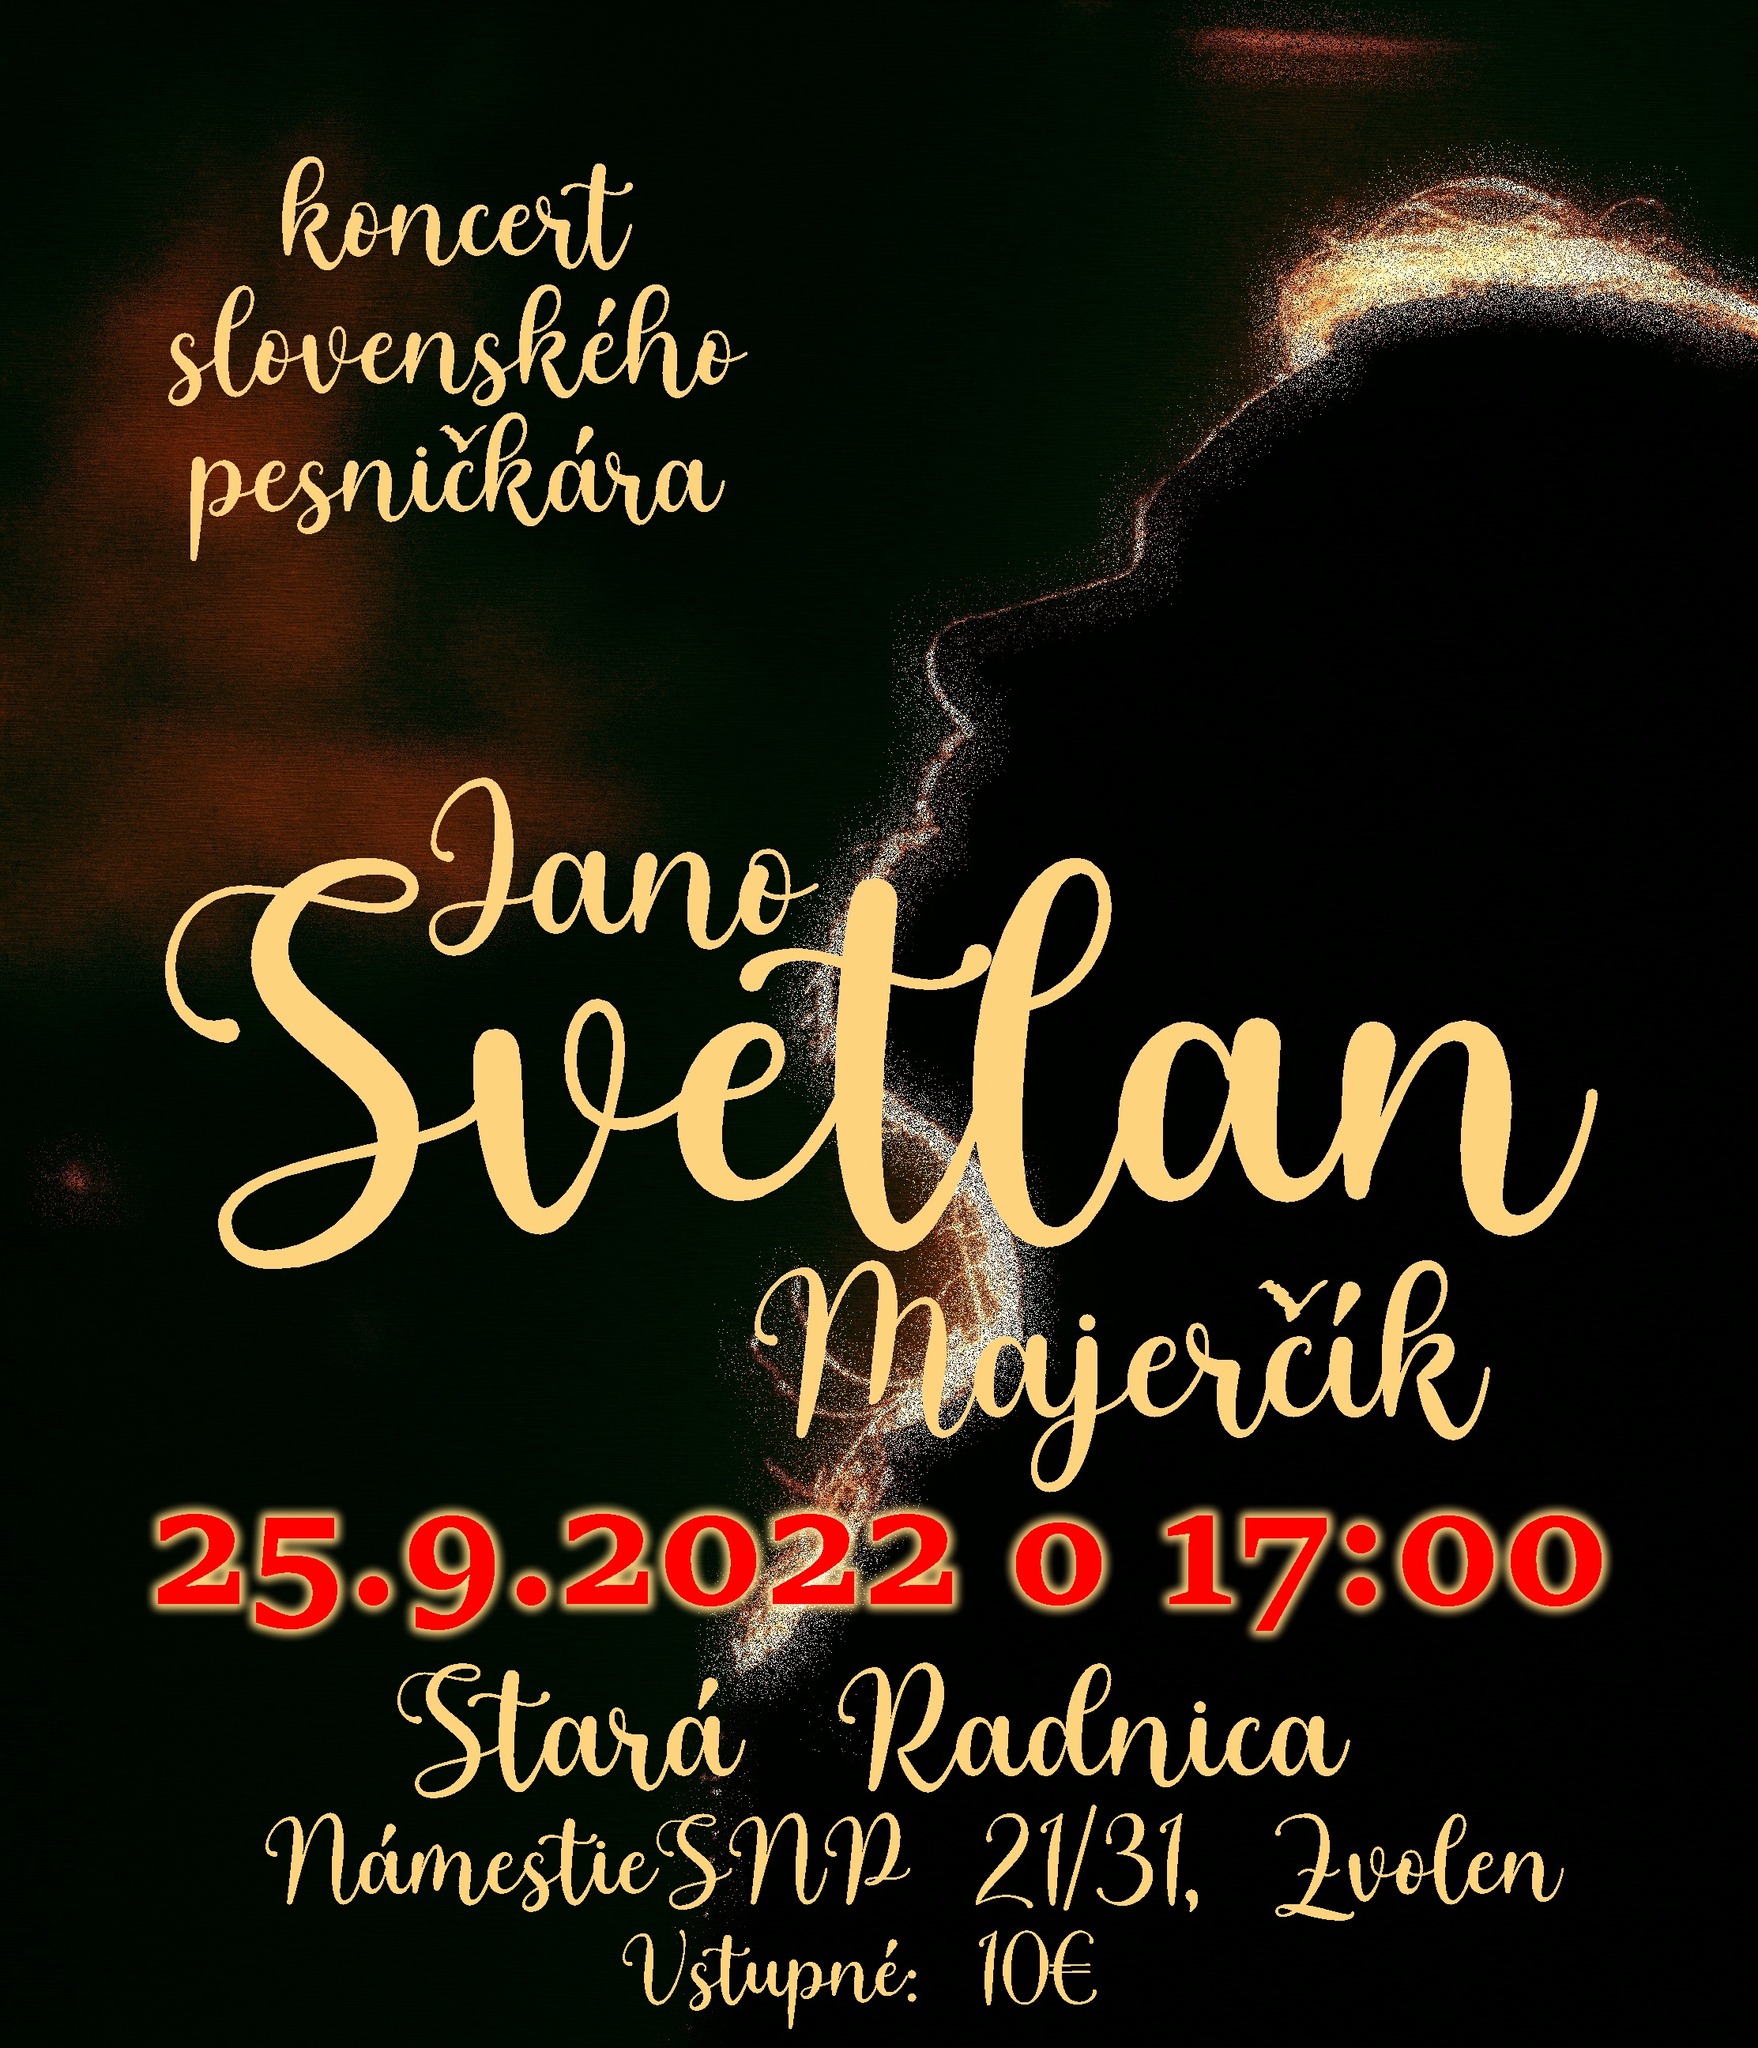 Janko SVETLAN Majerčík - koncert slovenského pesničkára Stará radnica